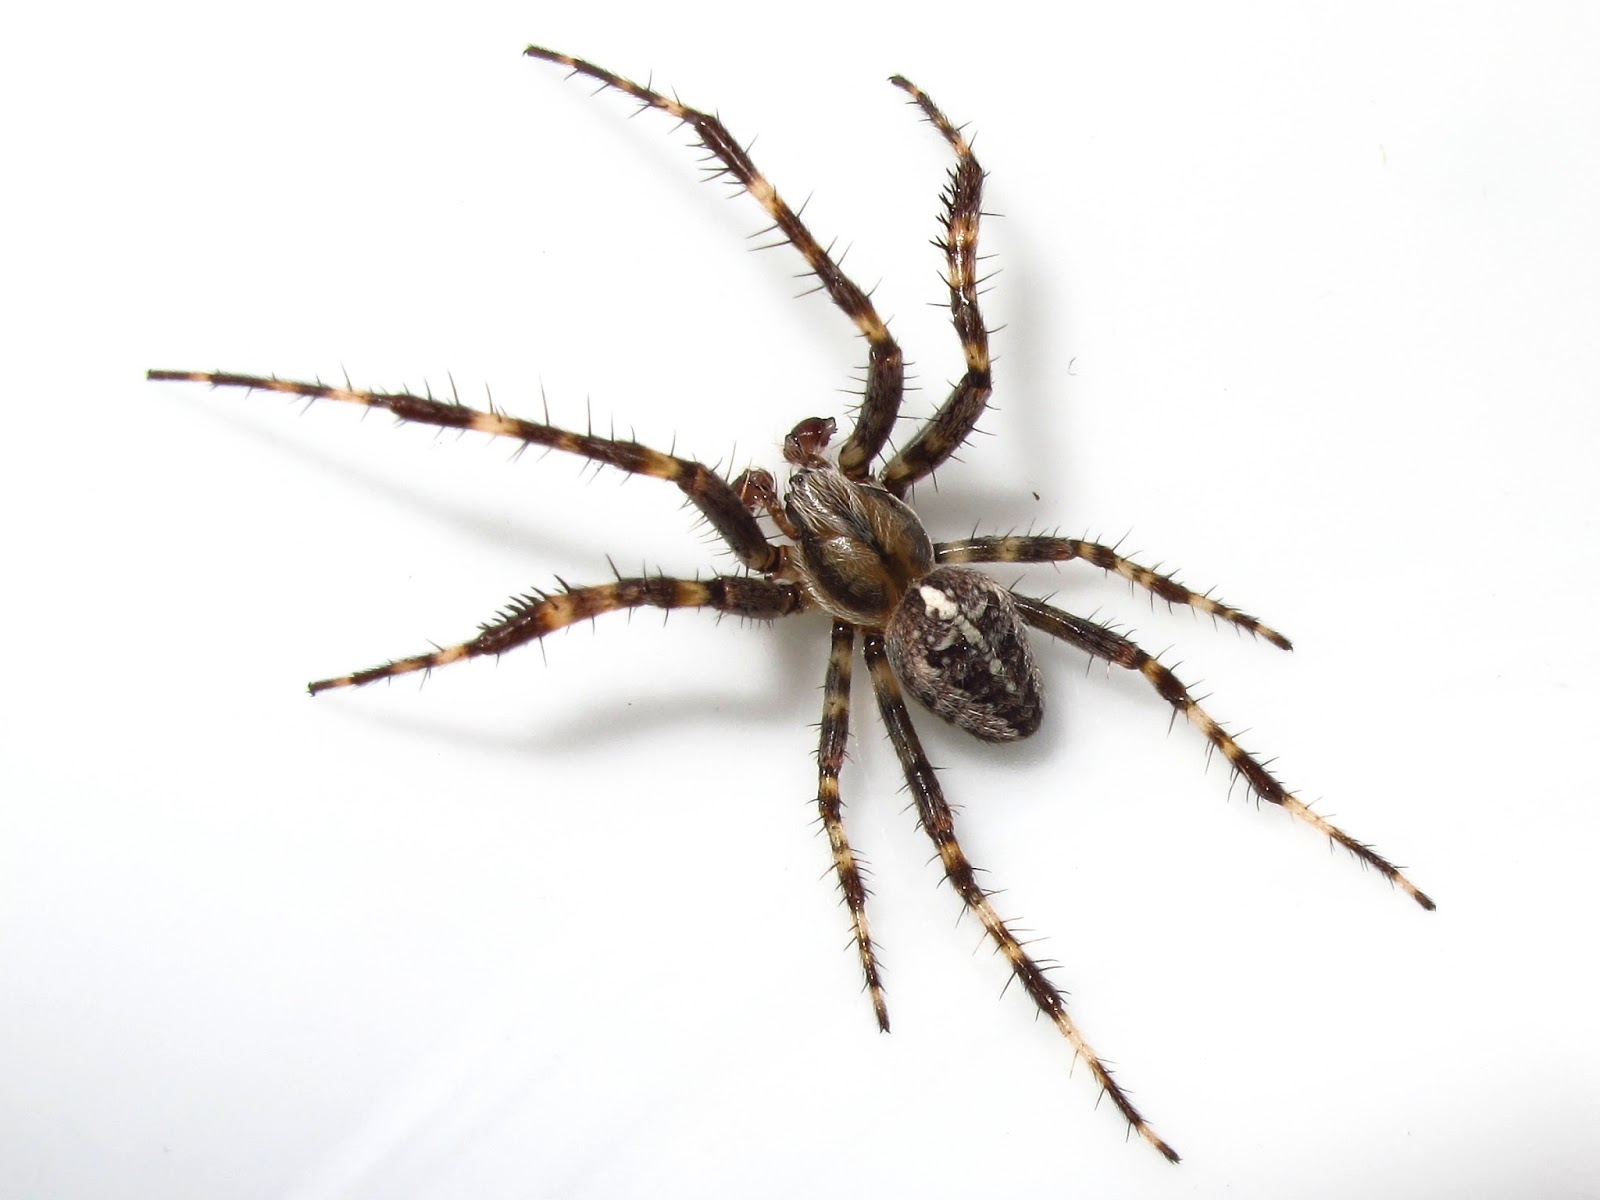 BugBlog: Male garden spider